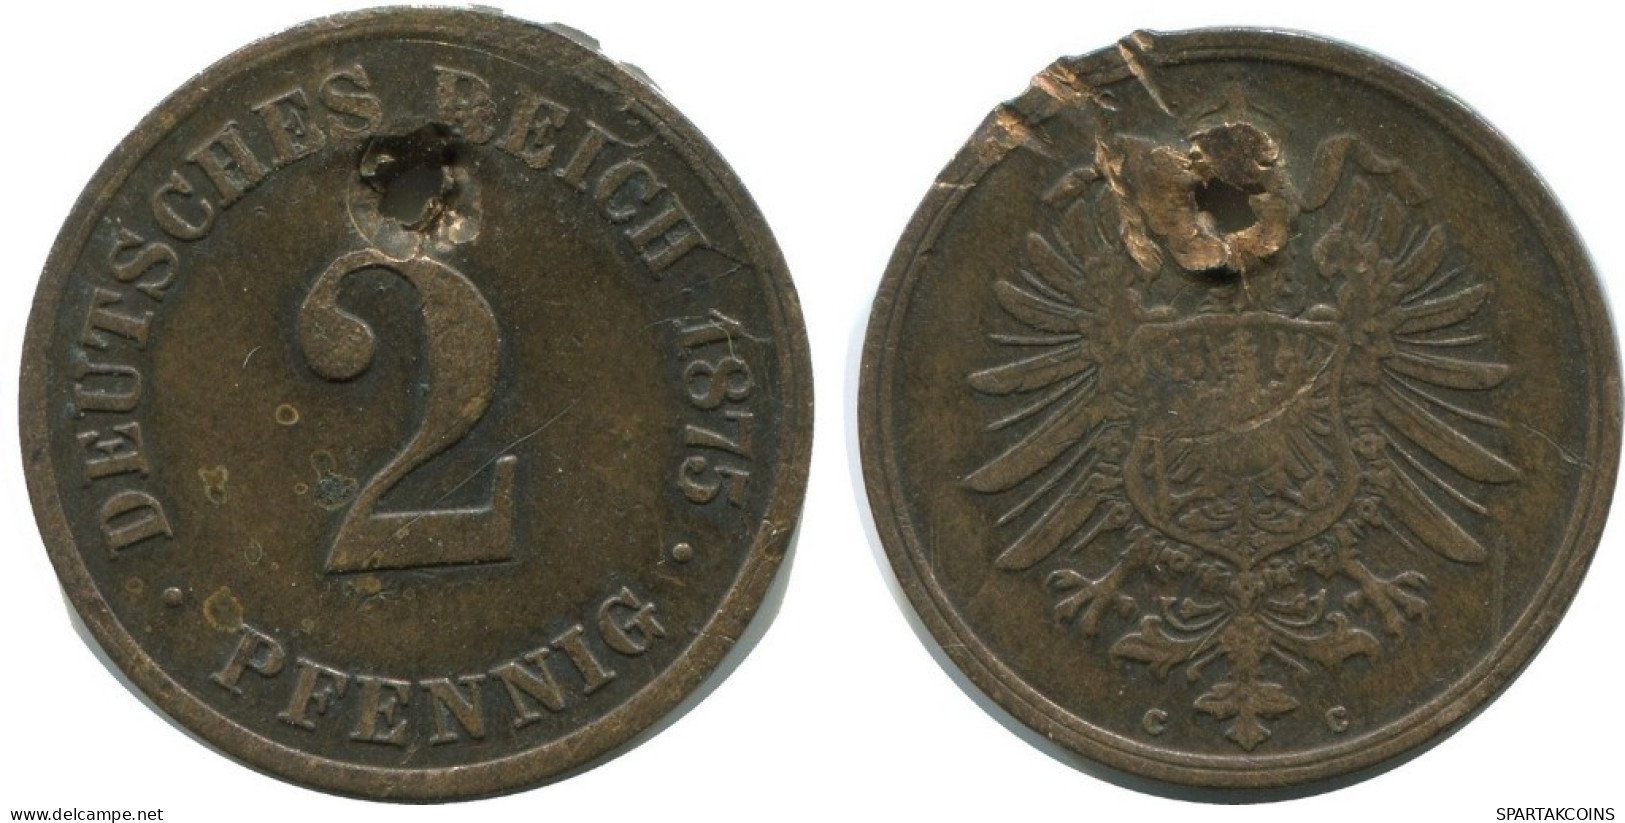 2 PFENNIG 1875 C GERMANY Coin #AD484.9.U.A - 2 Pfennig